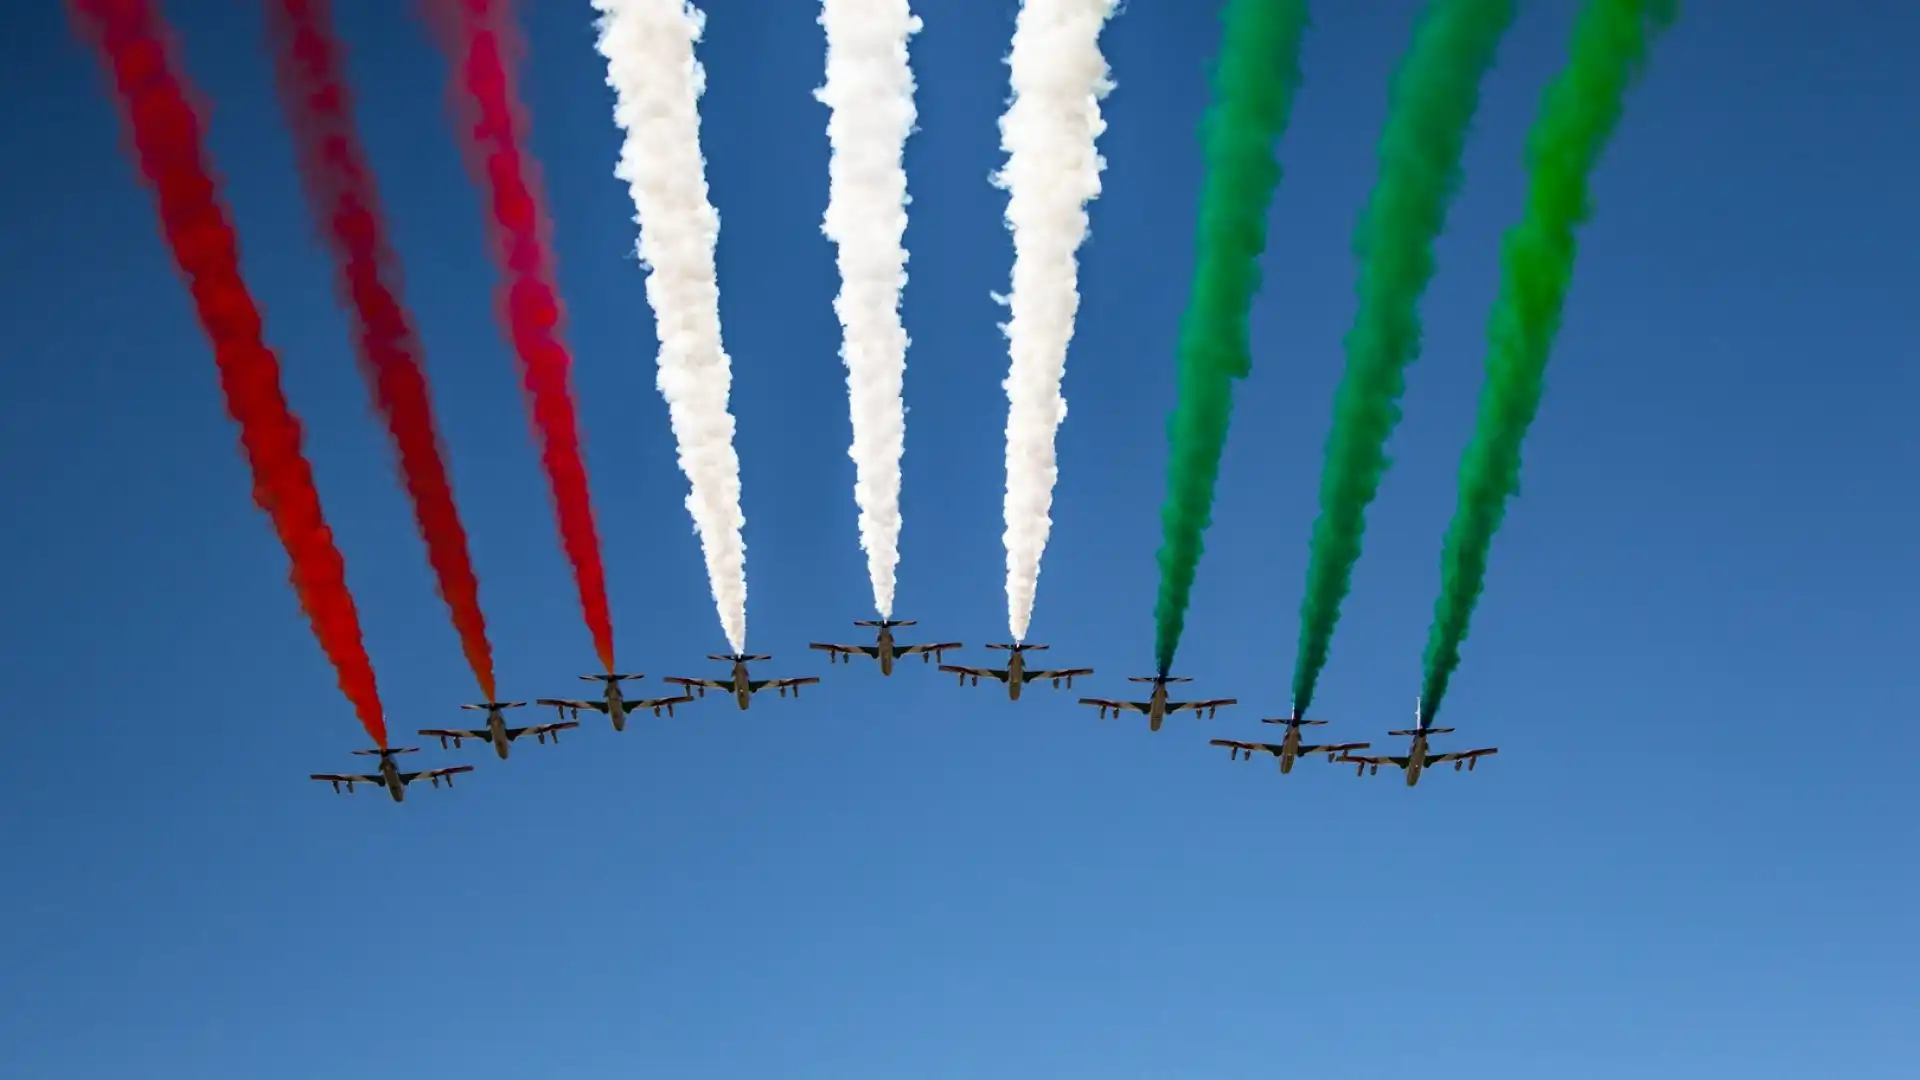 L'inno italiano ha accompagnato la pattuglia dell'Aeronautica Militare Italiana. Foto di Cristian Lovati